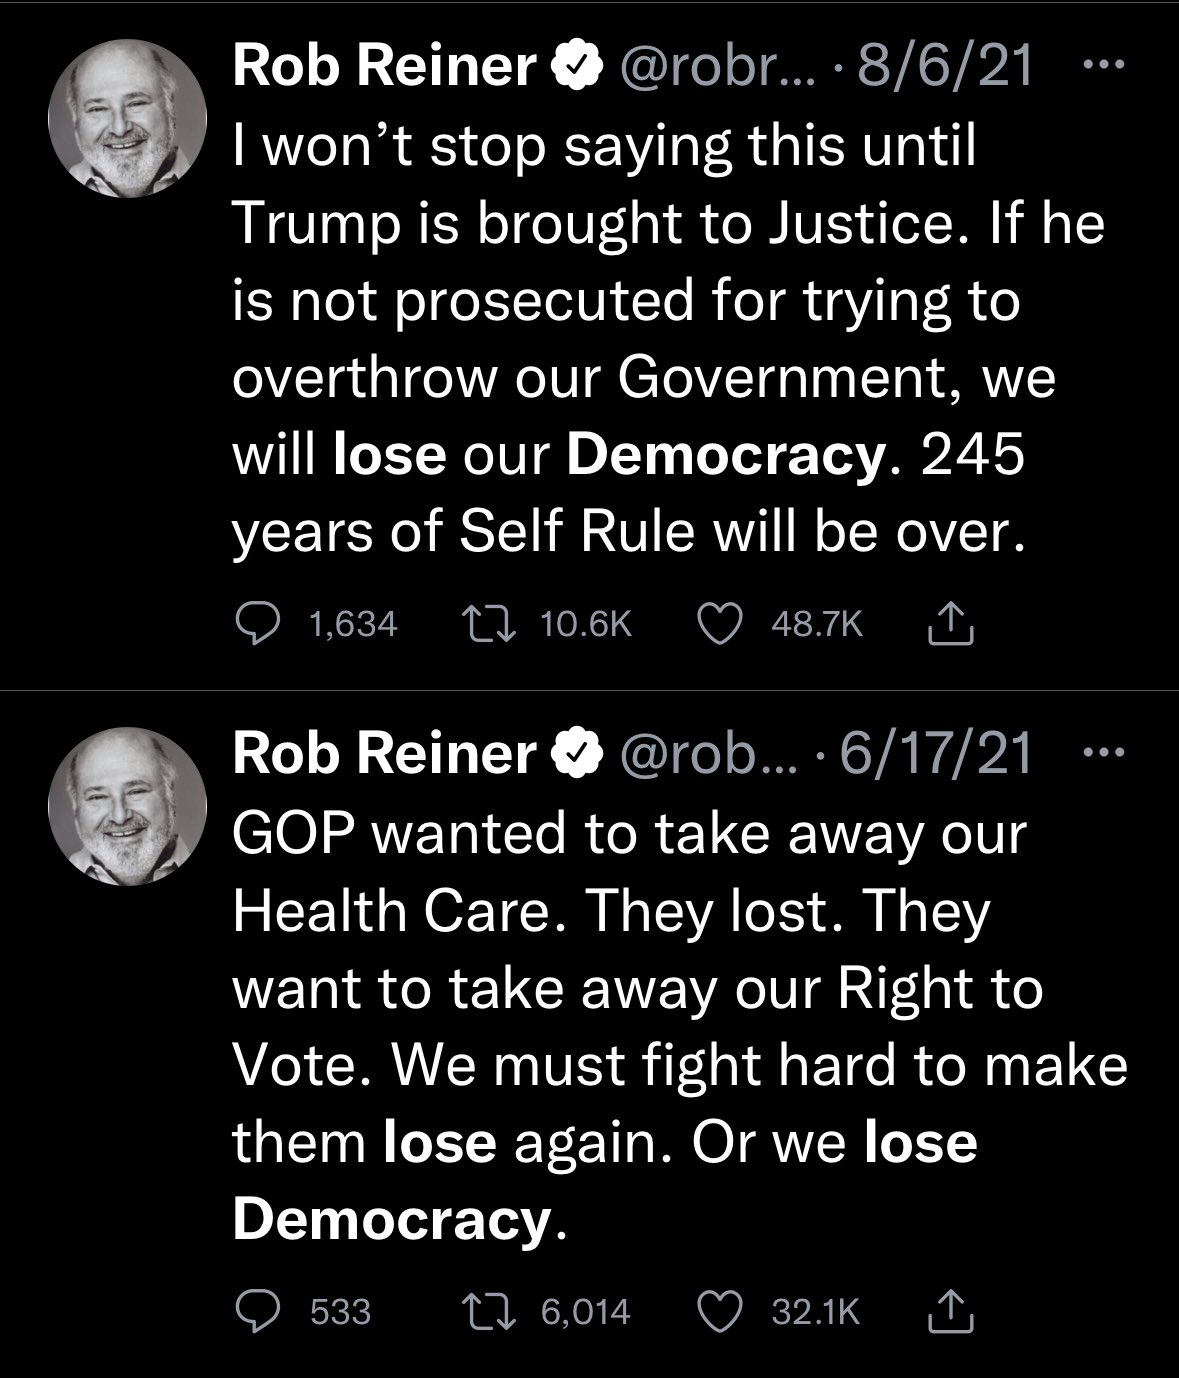 Rob Reiner being frightened